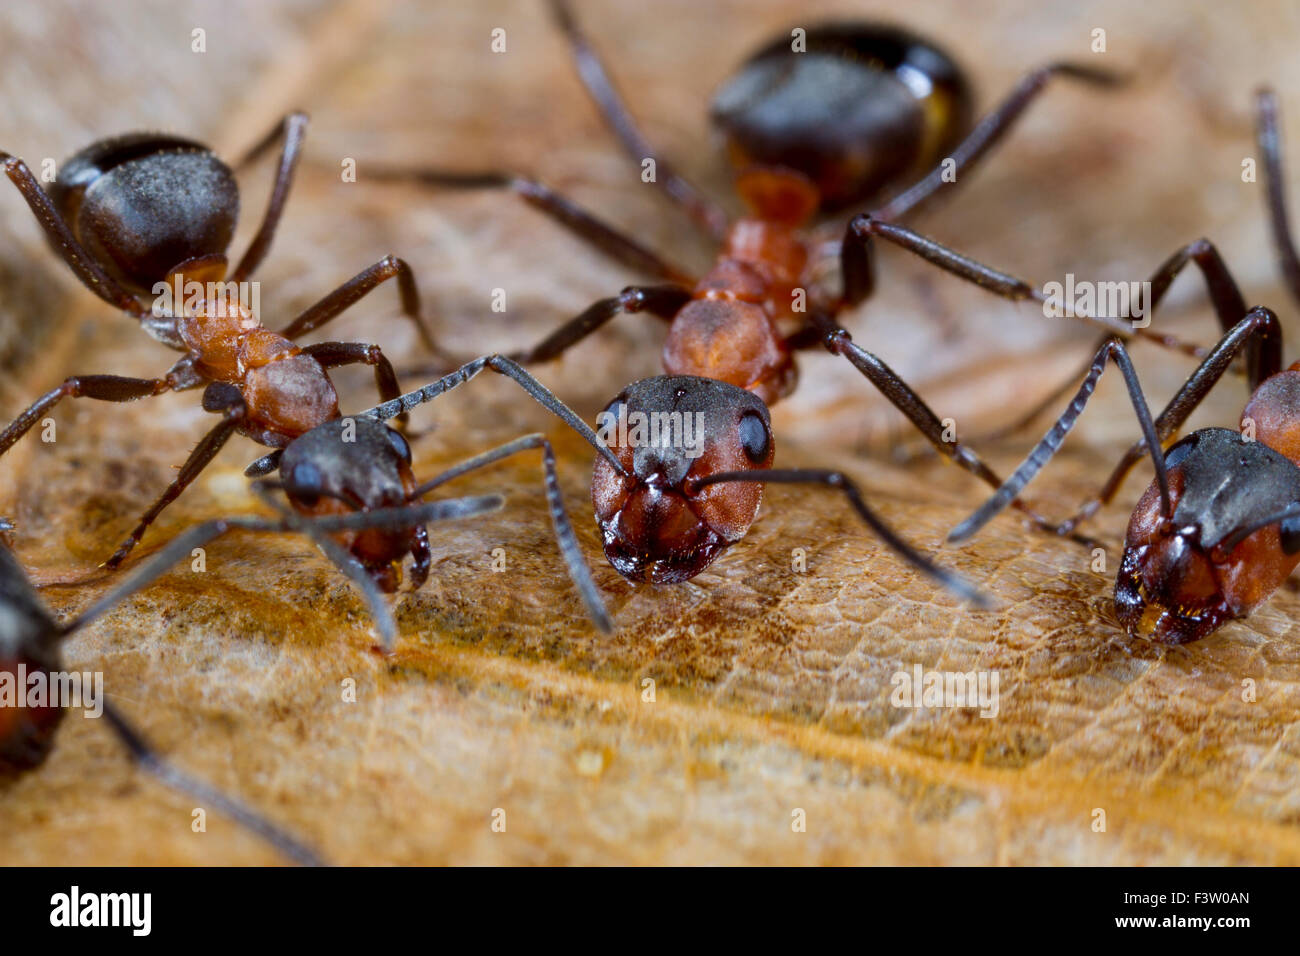 Las hormigas de madera roja (Formica rufa) trabajadores adultos azúcar en agua potable de cebo. Shropshire, Inglaterra. De abril. Foto de stock